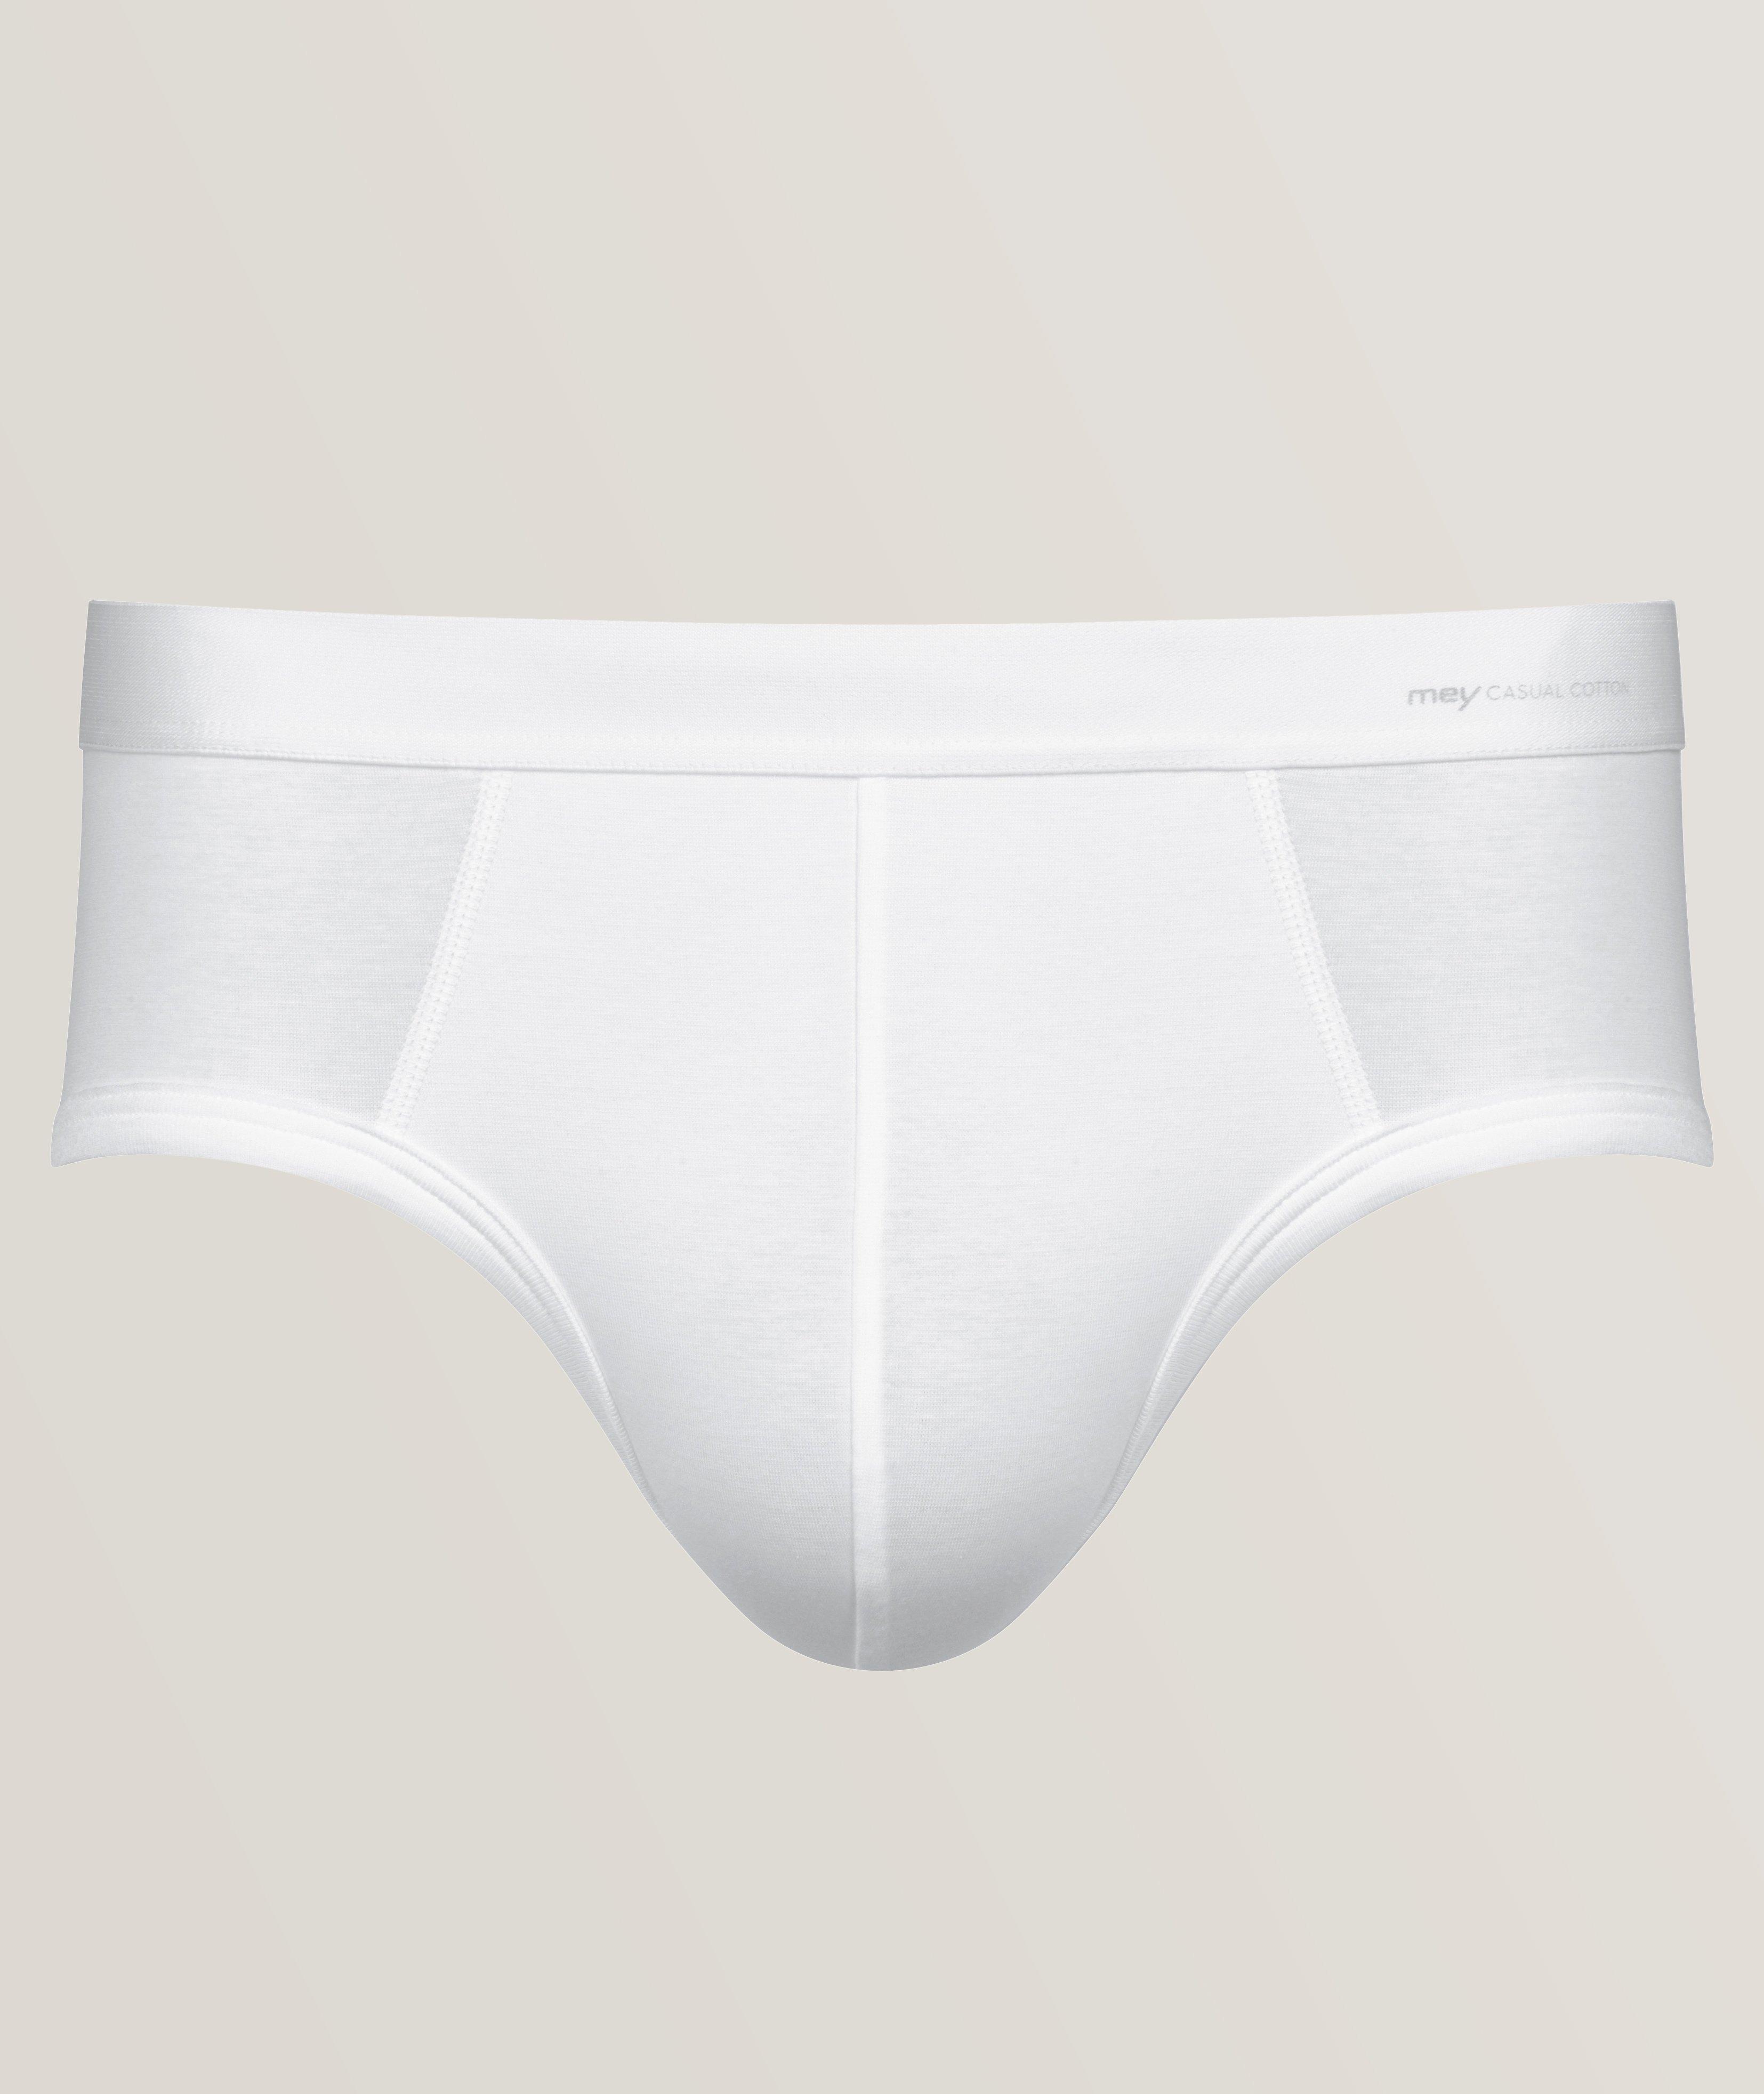 100% original branded underwear again ✌🏻, men's underwear